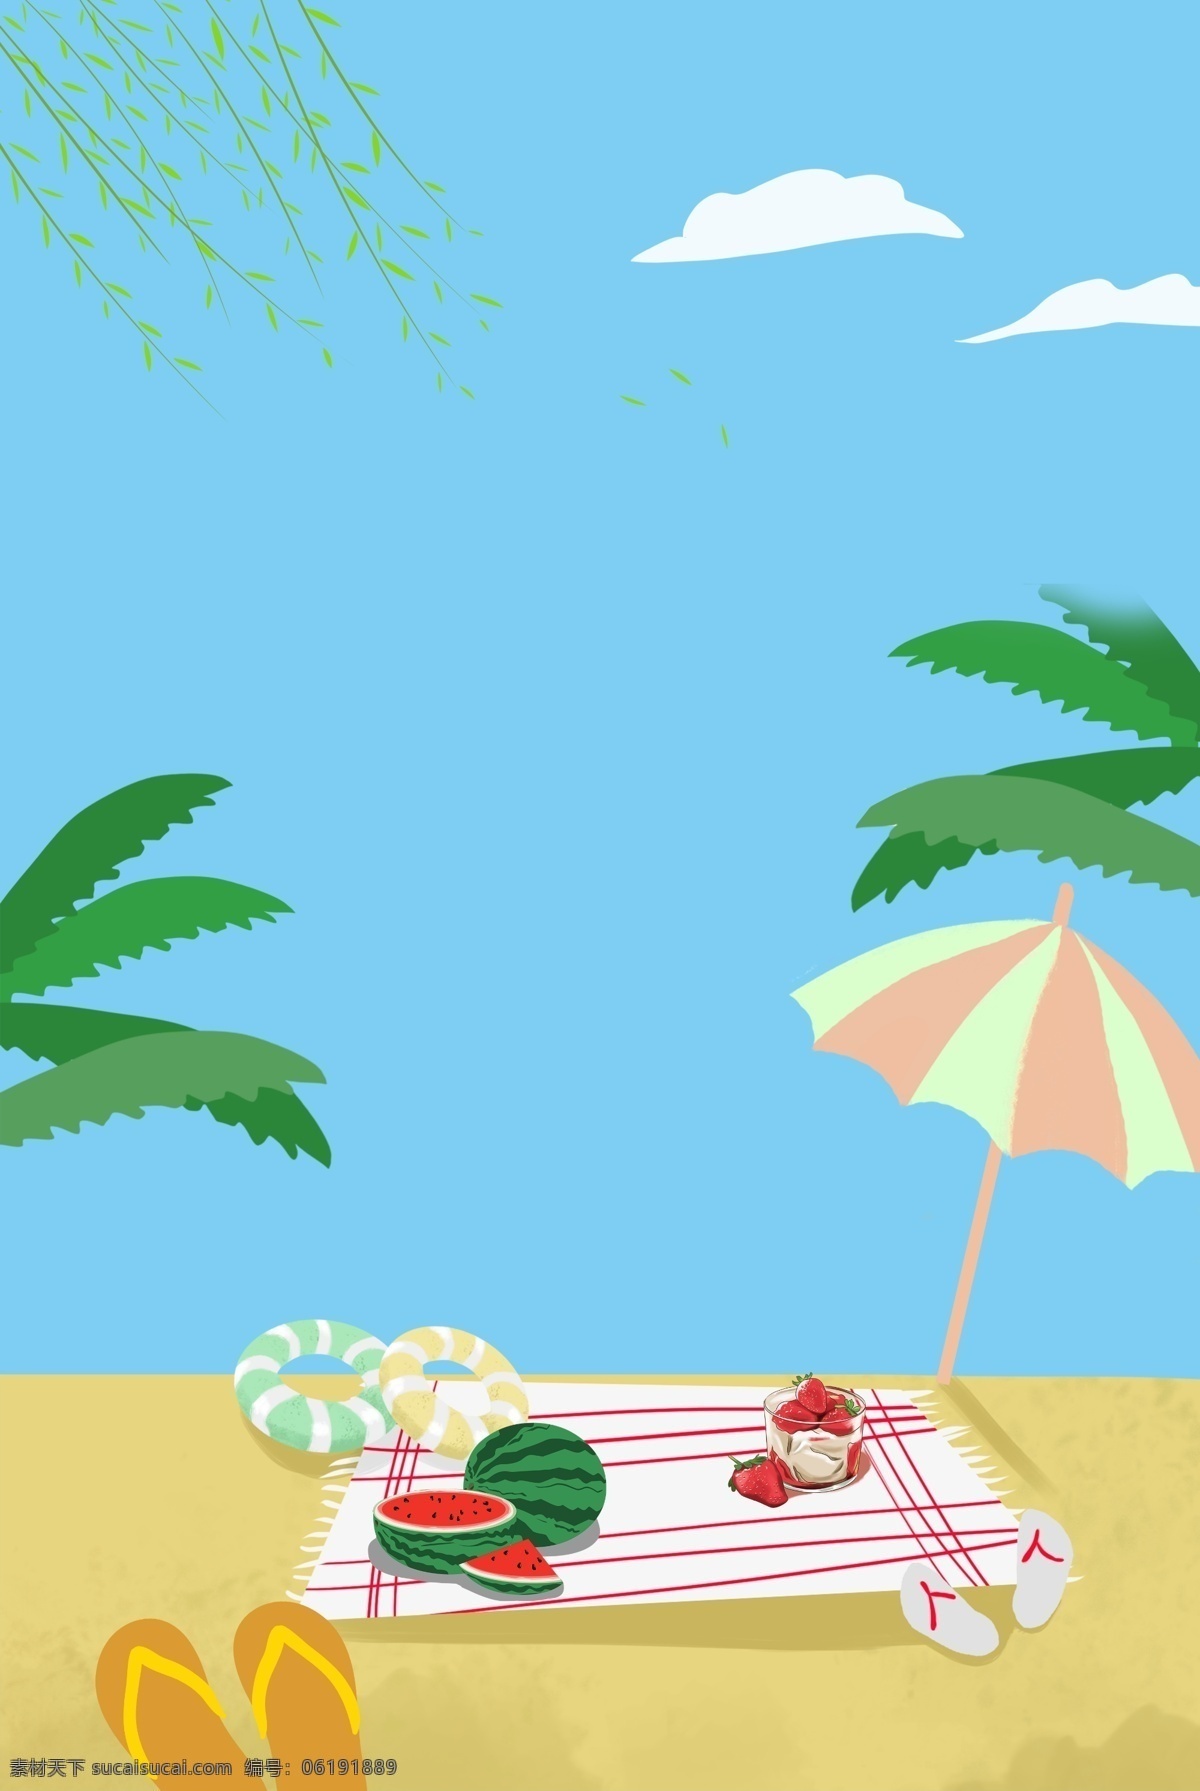 夏季 海滩 蓝色 文艺 海报 banner 背景 蓝色背景 psd源文件 淘宝 天猫 叶子 树木 开心